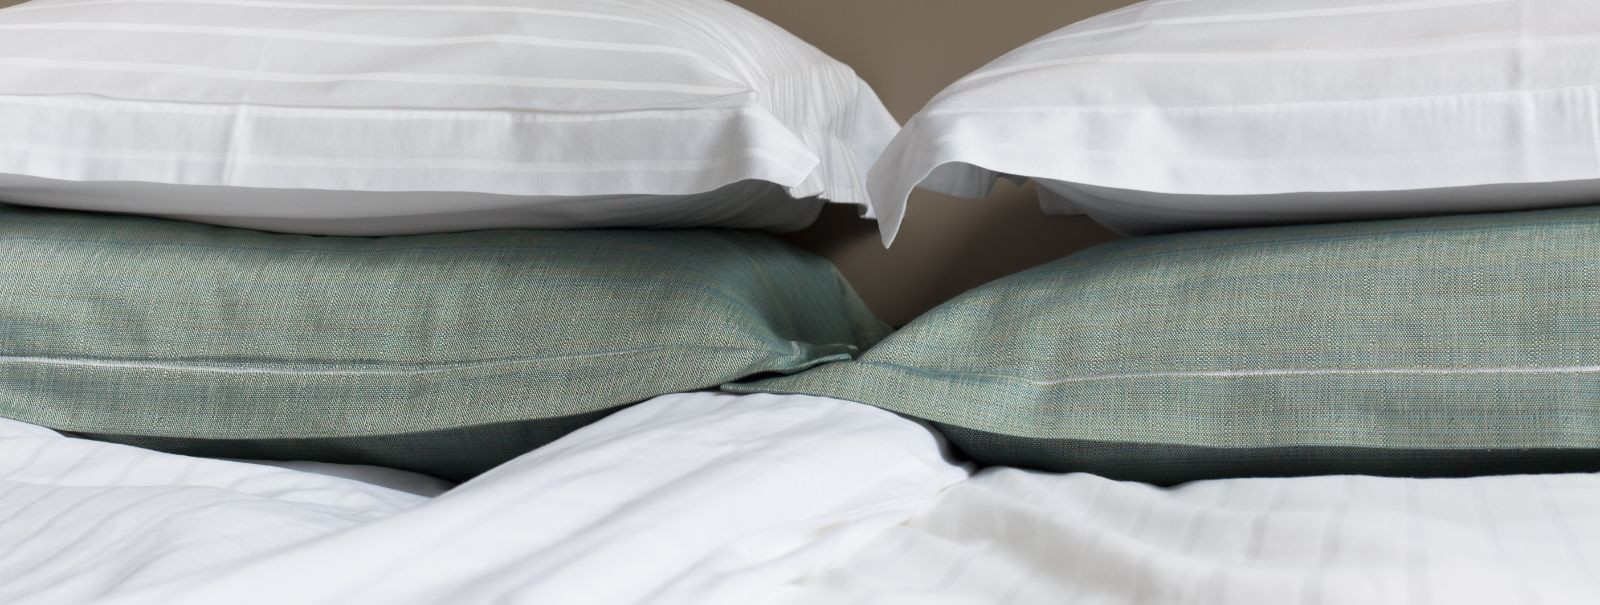 Kvaliteetne voodipesu ei ole lihtsalt luksus; see on hea une jaoks hädavajalik. Õige voodipesu aitab reguleerida kehatemperatuuri, hoida allergeene eemal ja pak